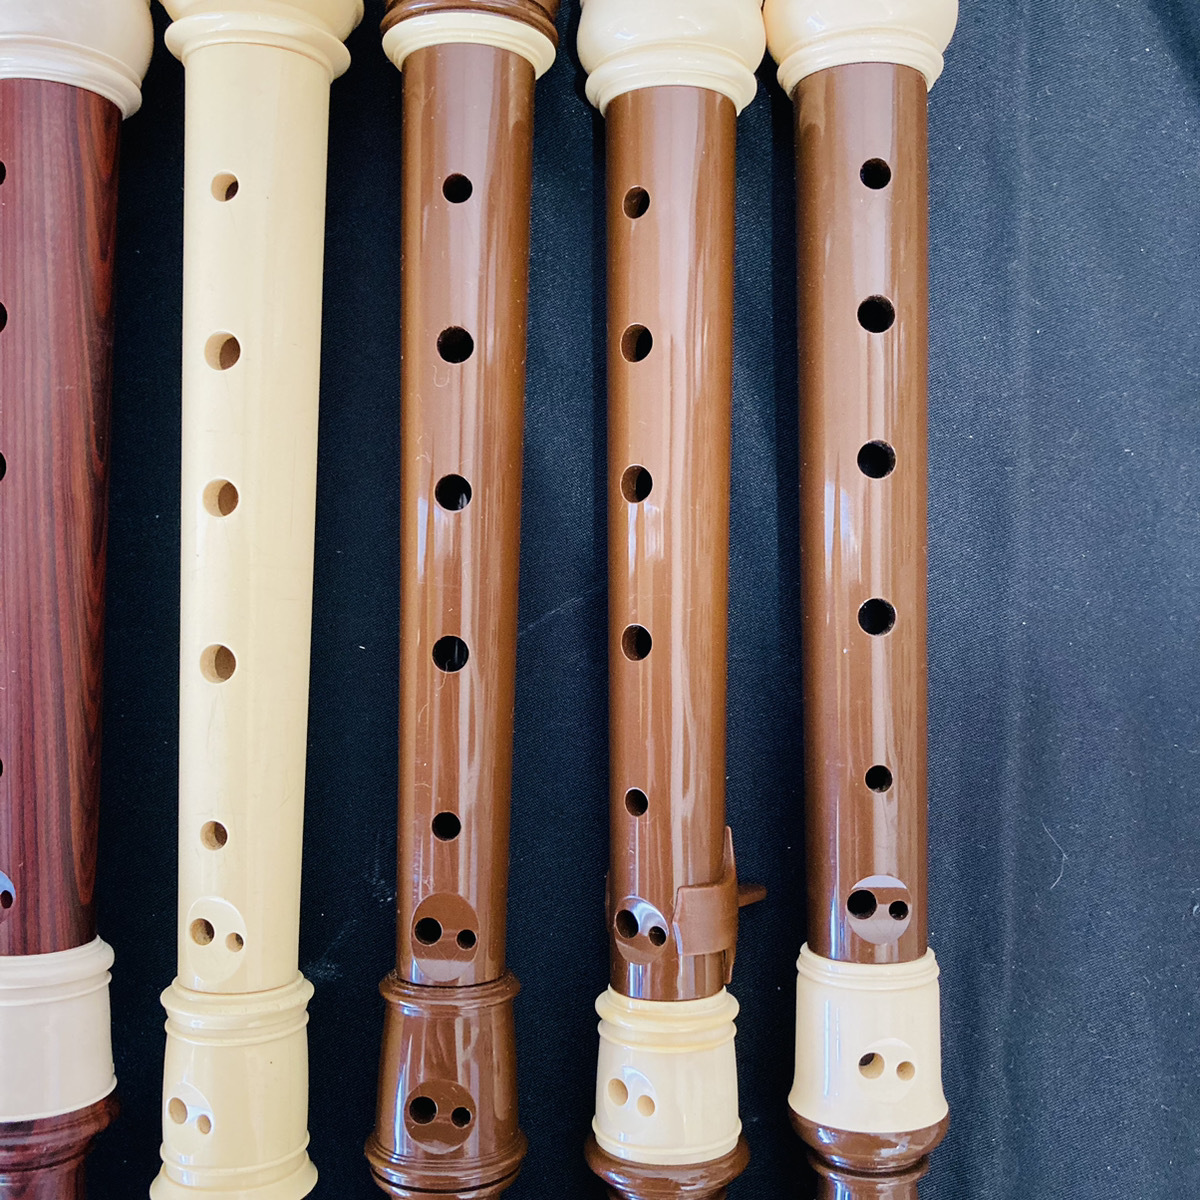 [A4251_6] продажа комплектом YAMAHA Yamaha сопрано блок-флейта суммировать ученик начальной школы . индустрия введение тренировка хобби музыка музыкальные инструменты длина дудка 